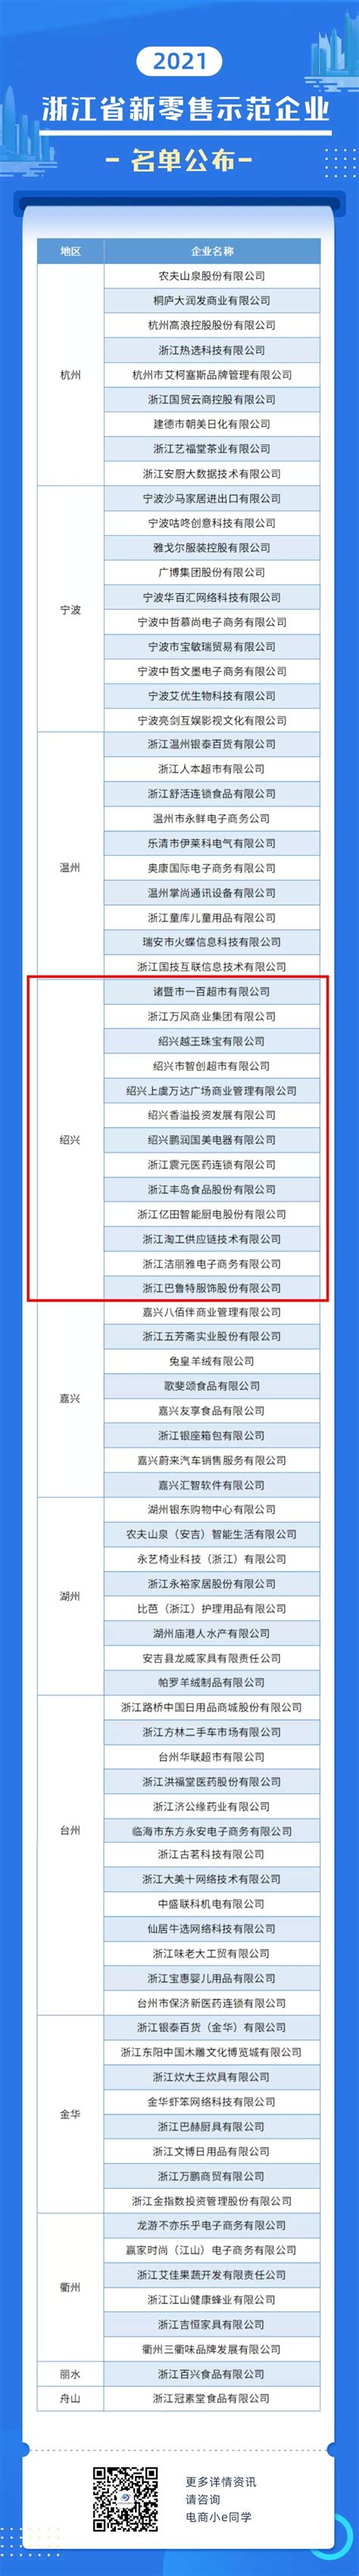 2019年浙江省软件业务收入30强企业排行榜-排行榜-中商情报网